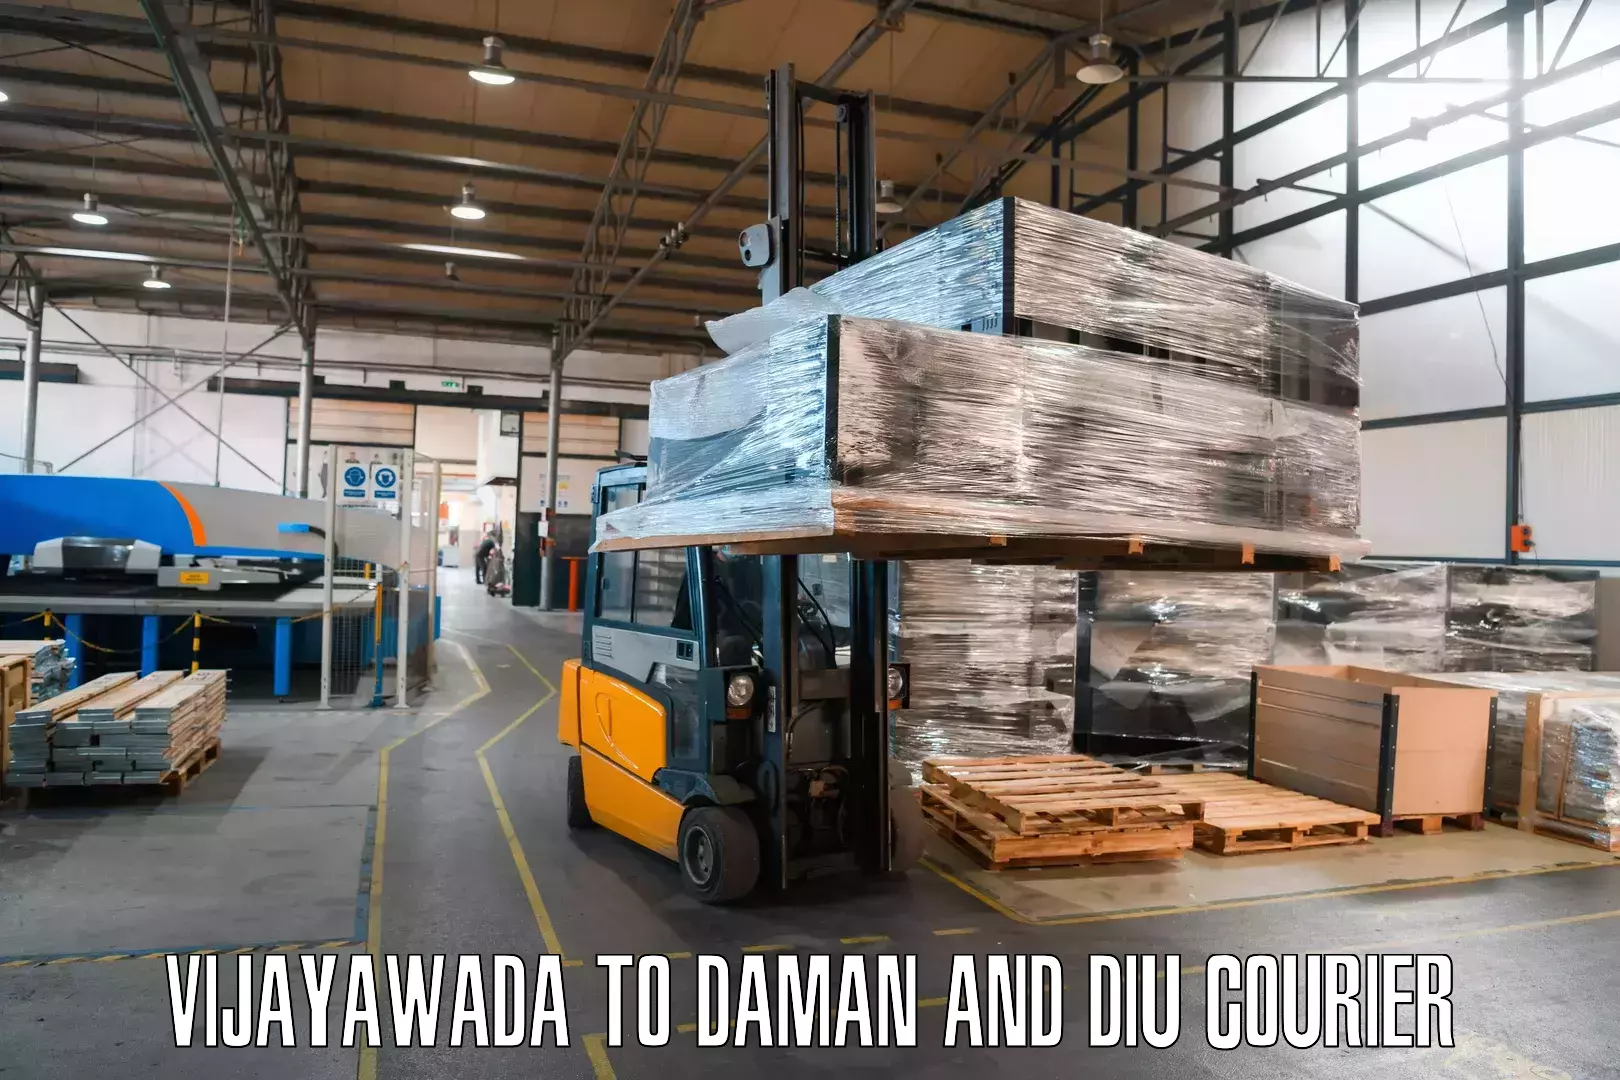 Next-generation courier services Vijayawada to Diu